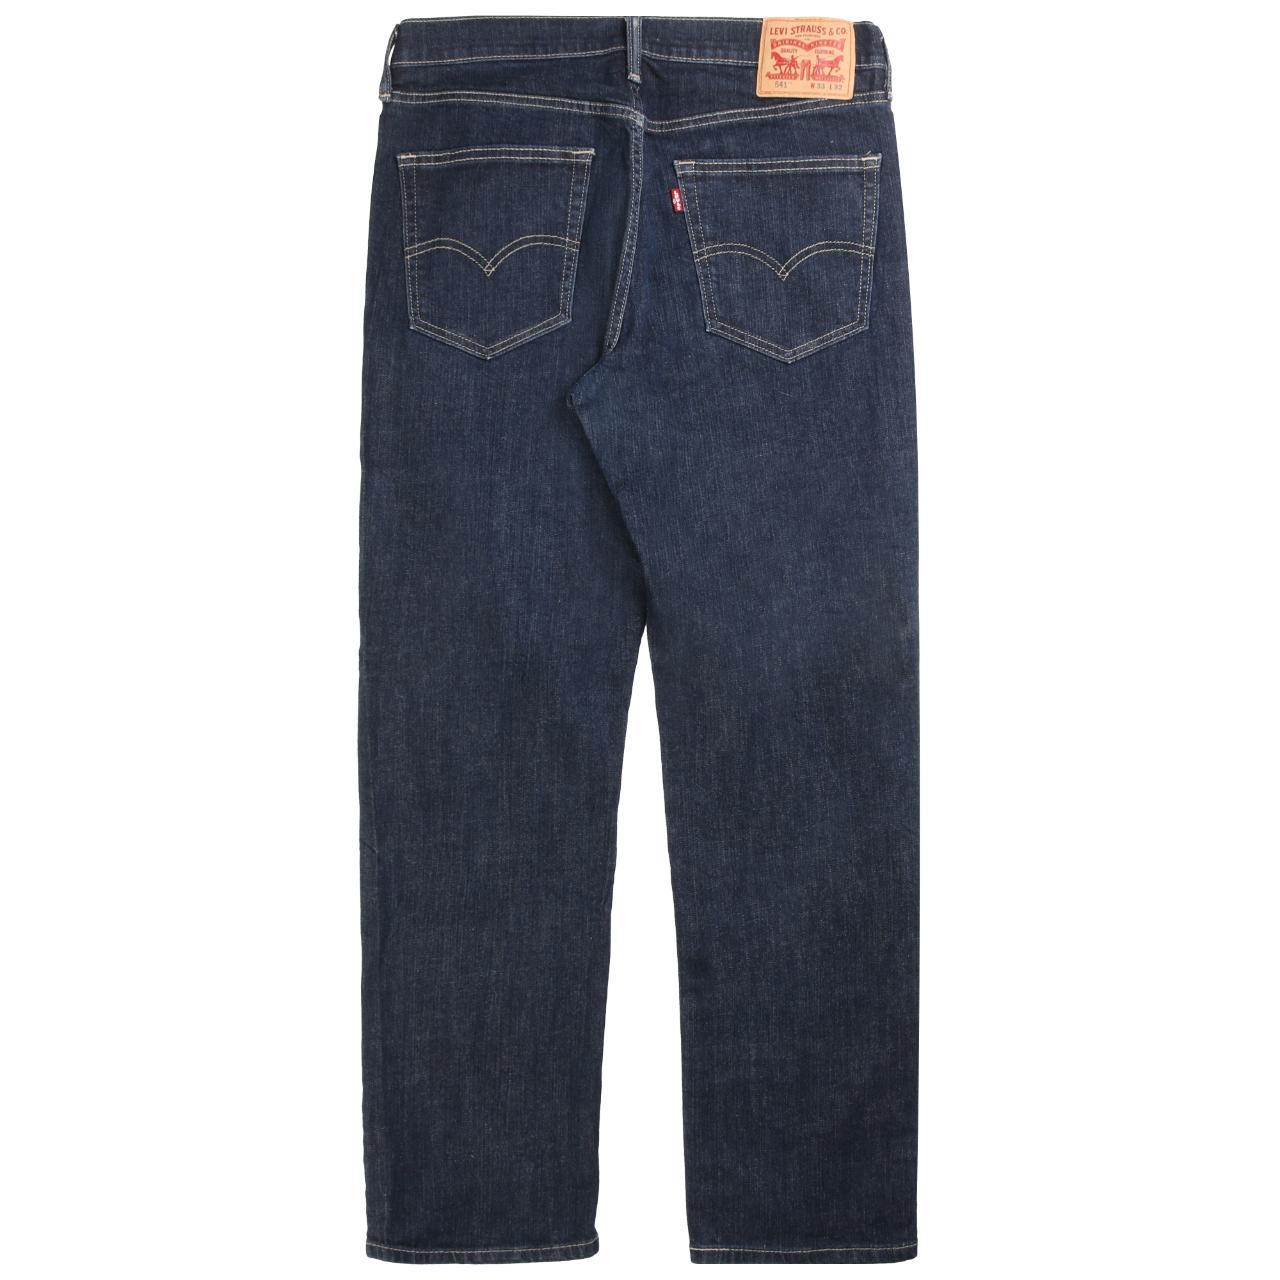 Vintage Levi's Jeans / Pants Levi's Jeans /... - Depop